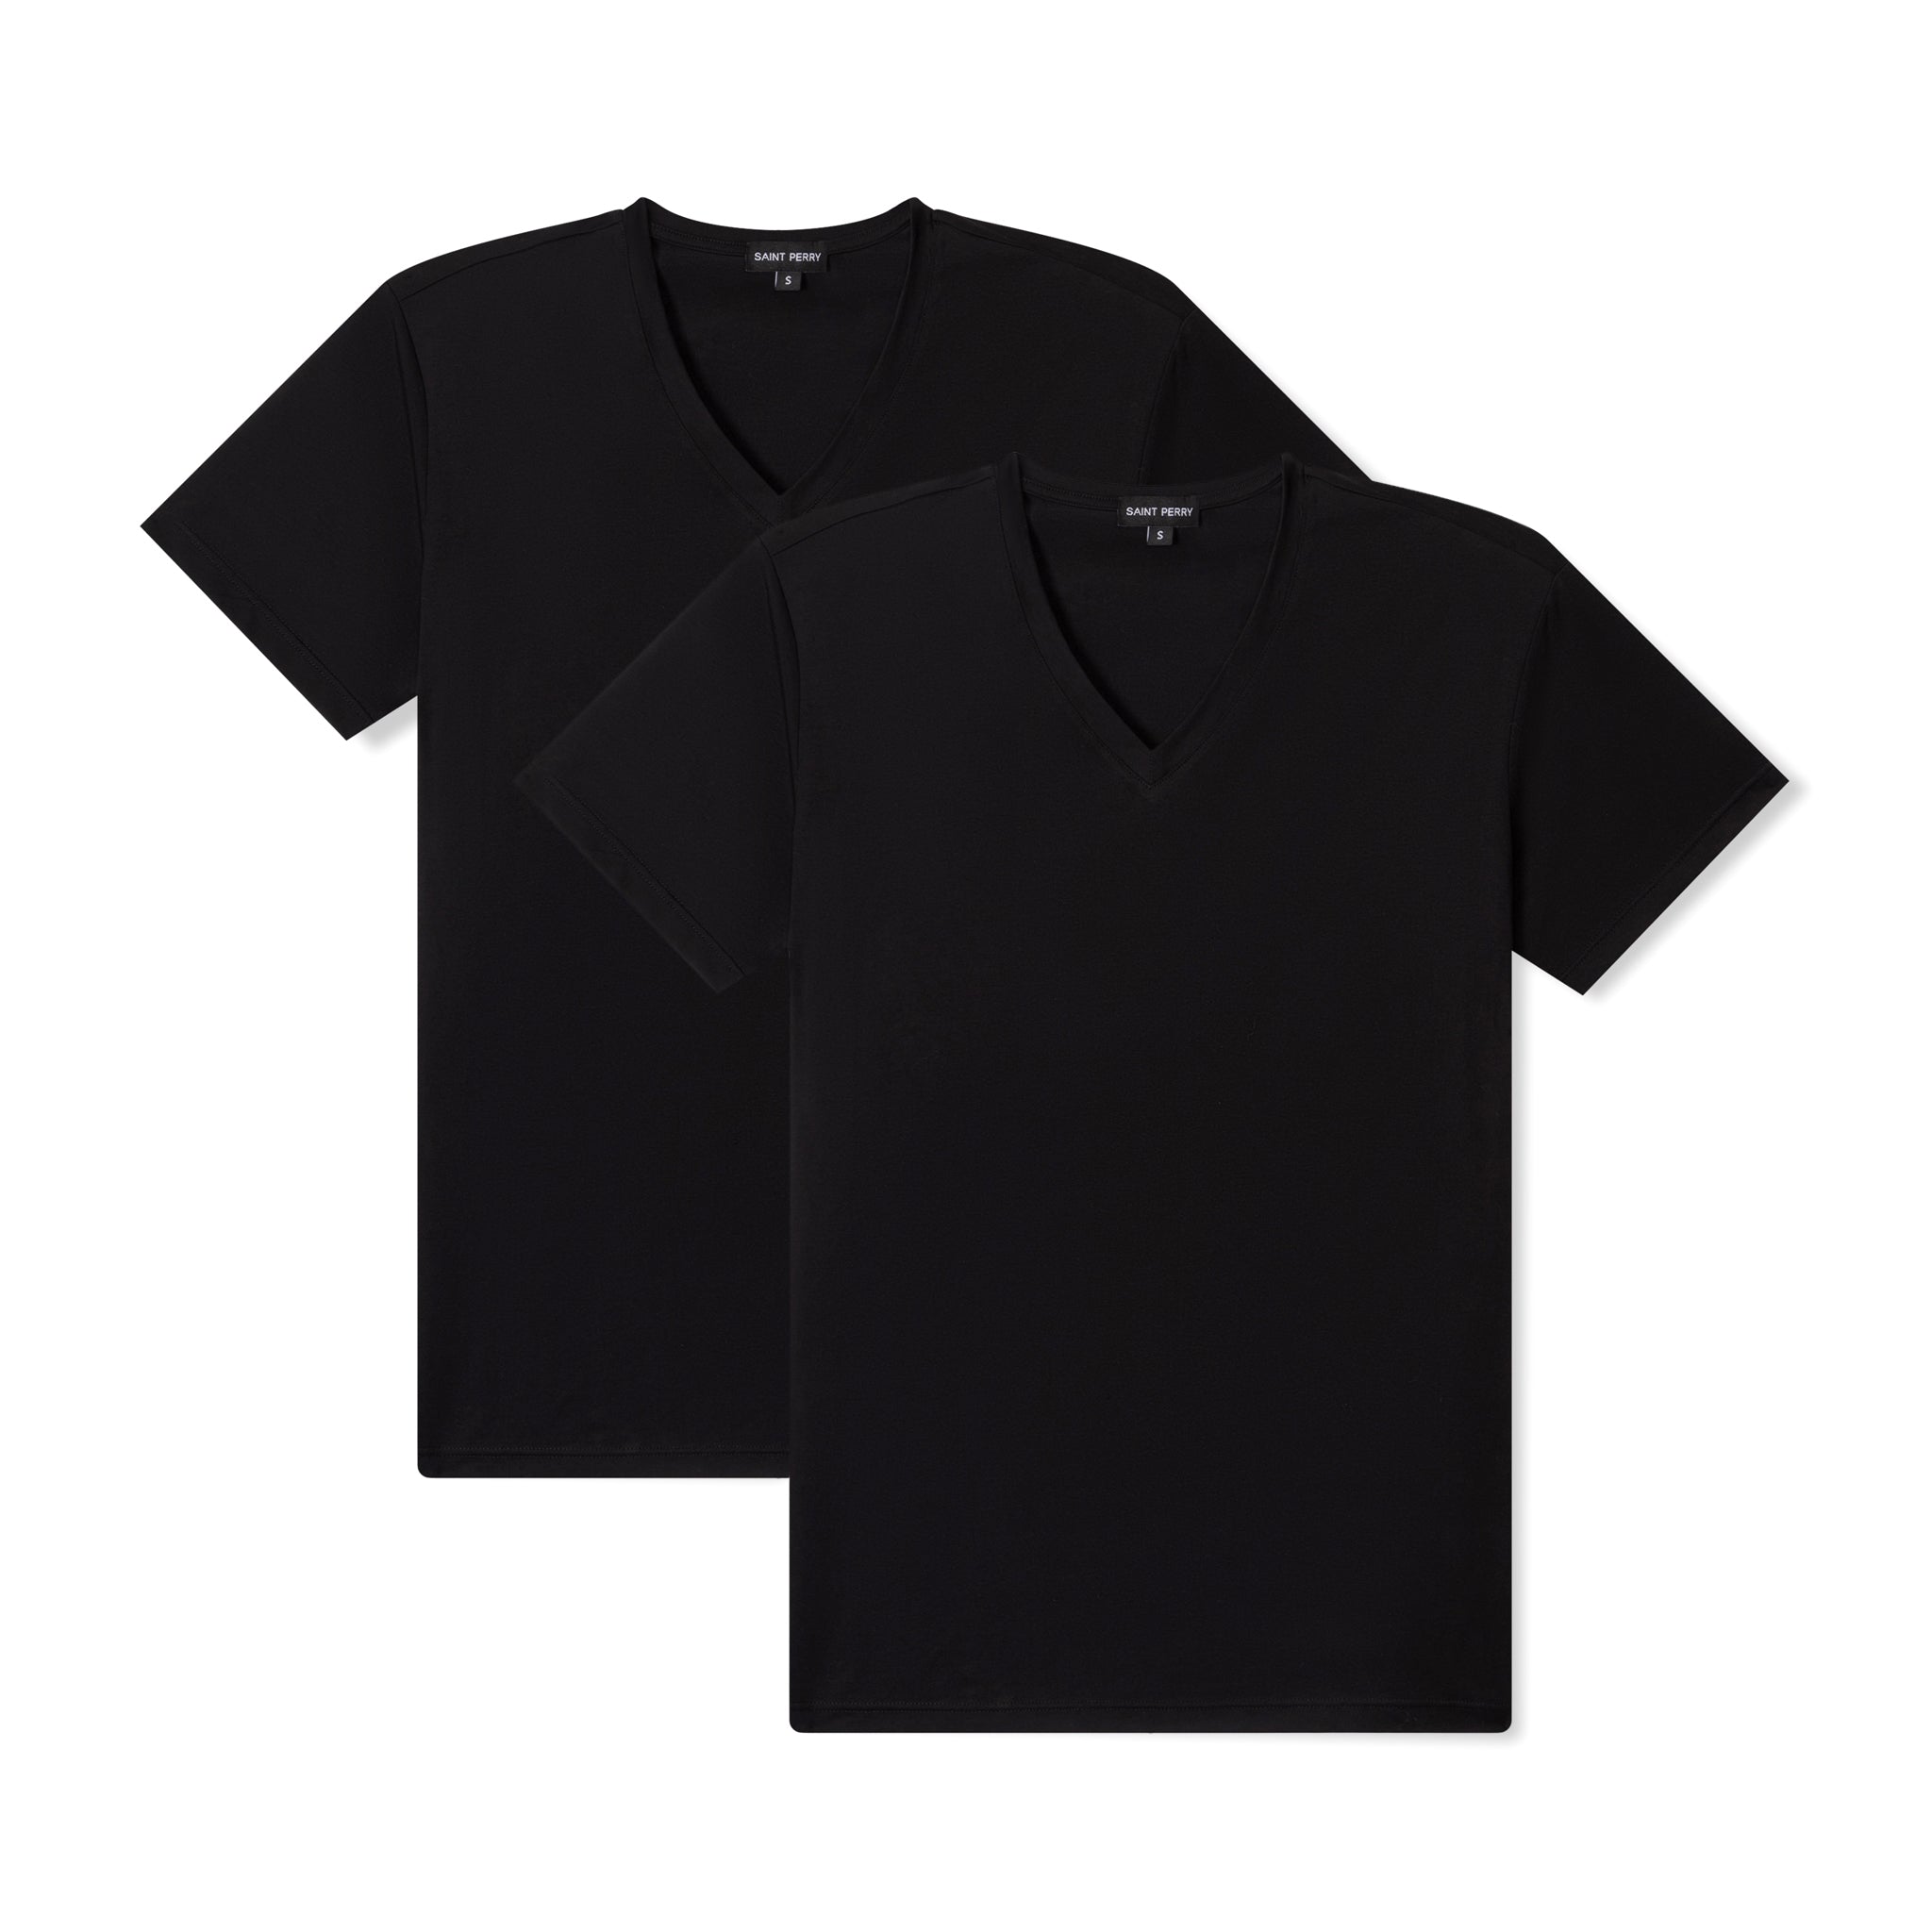 Men's V-Neck Black T-Shirt 2 Pack